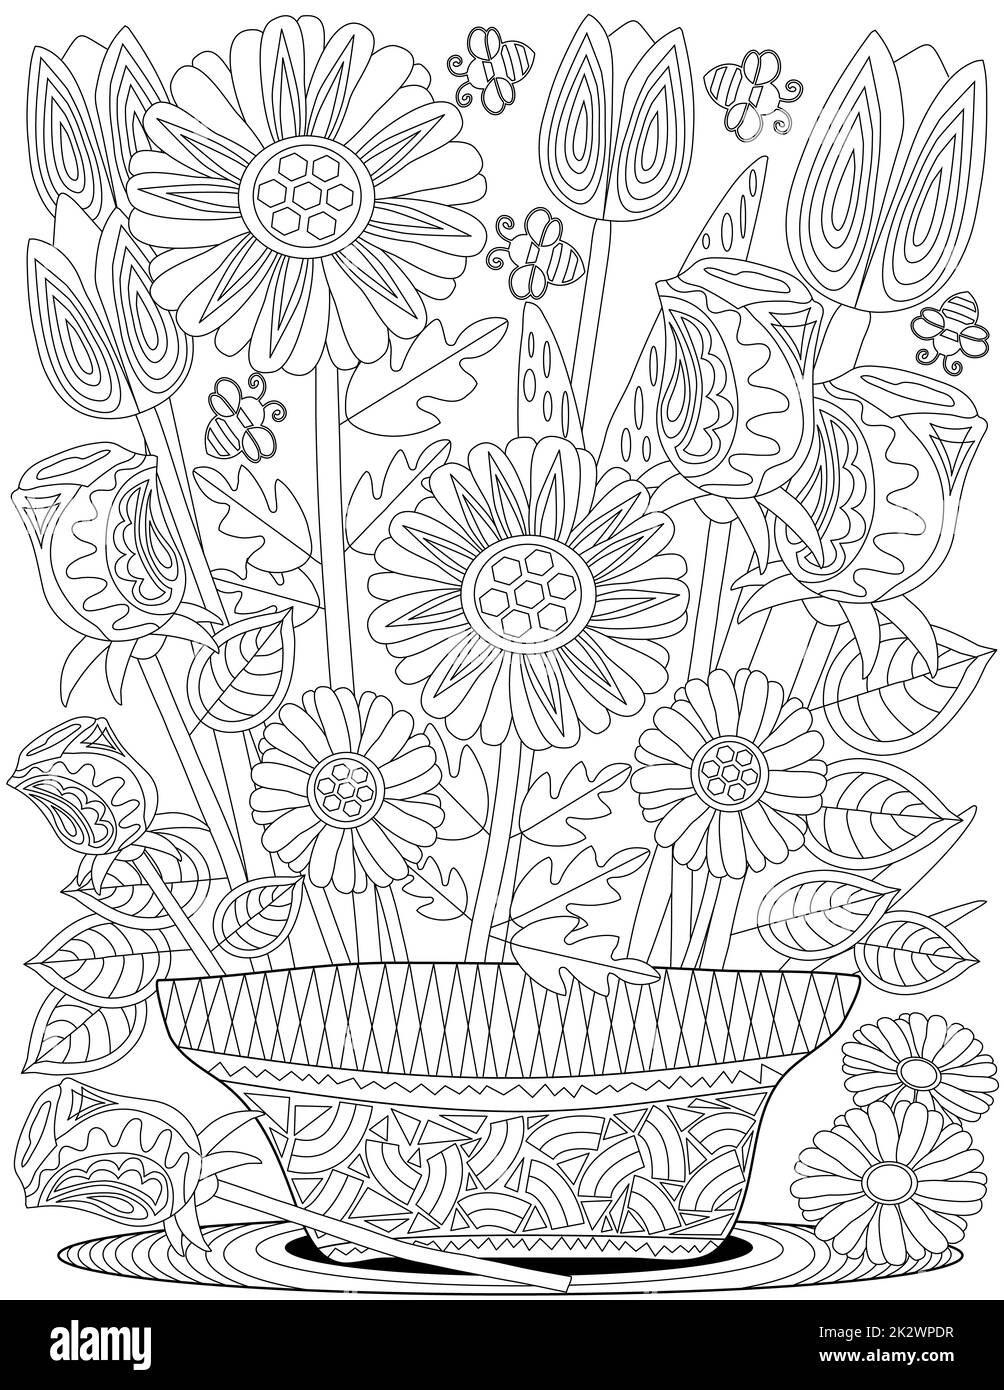 Linea vettoriale disegno elaborato fiori di girasole vaso fiore seduta per. Digital lineart immagine vaso tulipani decorazione tappeto. Contorno disegno fiori fogliame pianta stand. Foto Stock